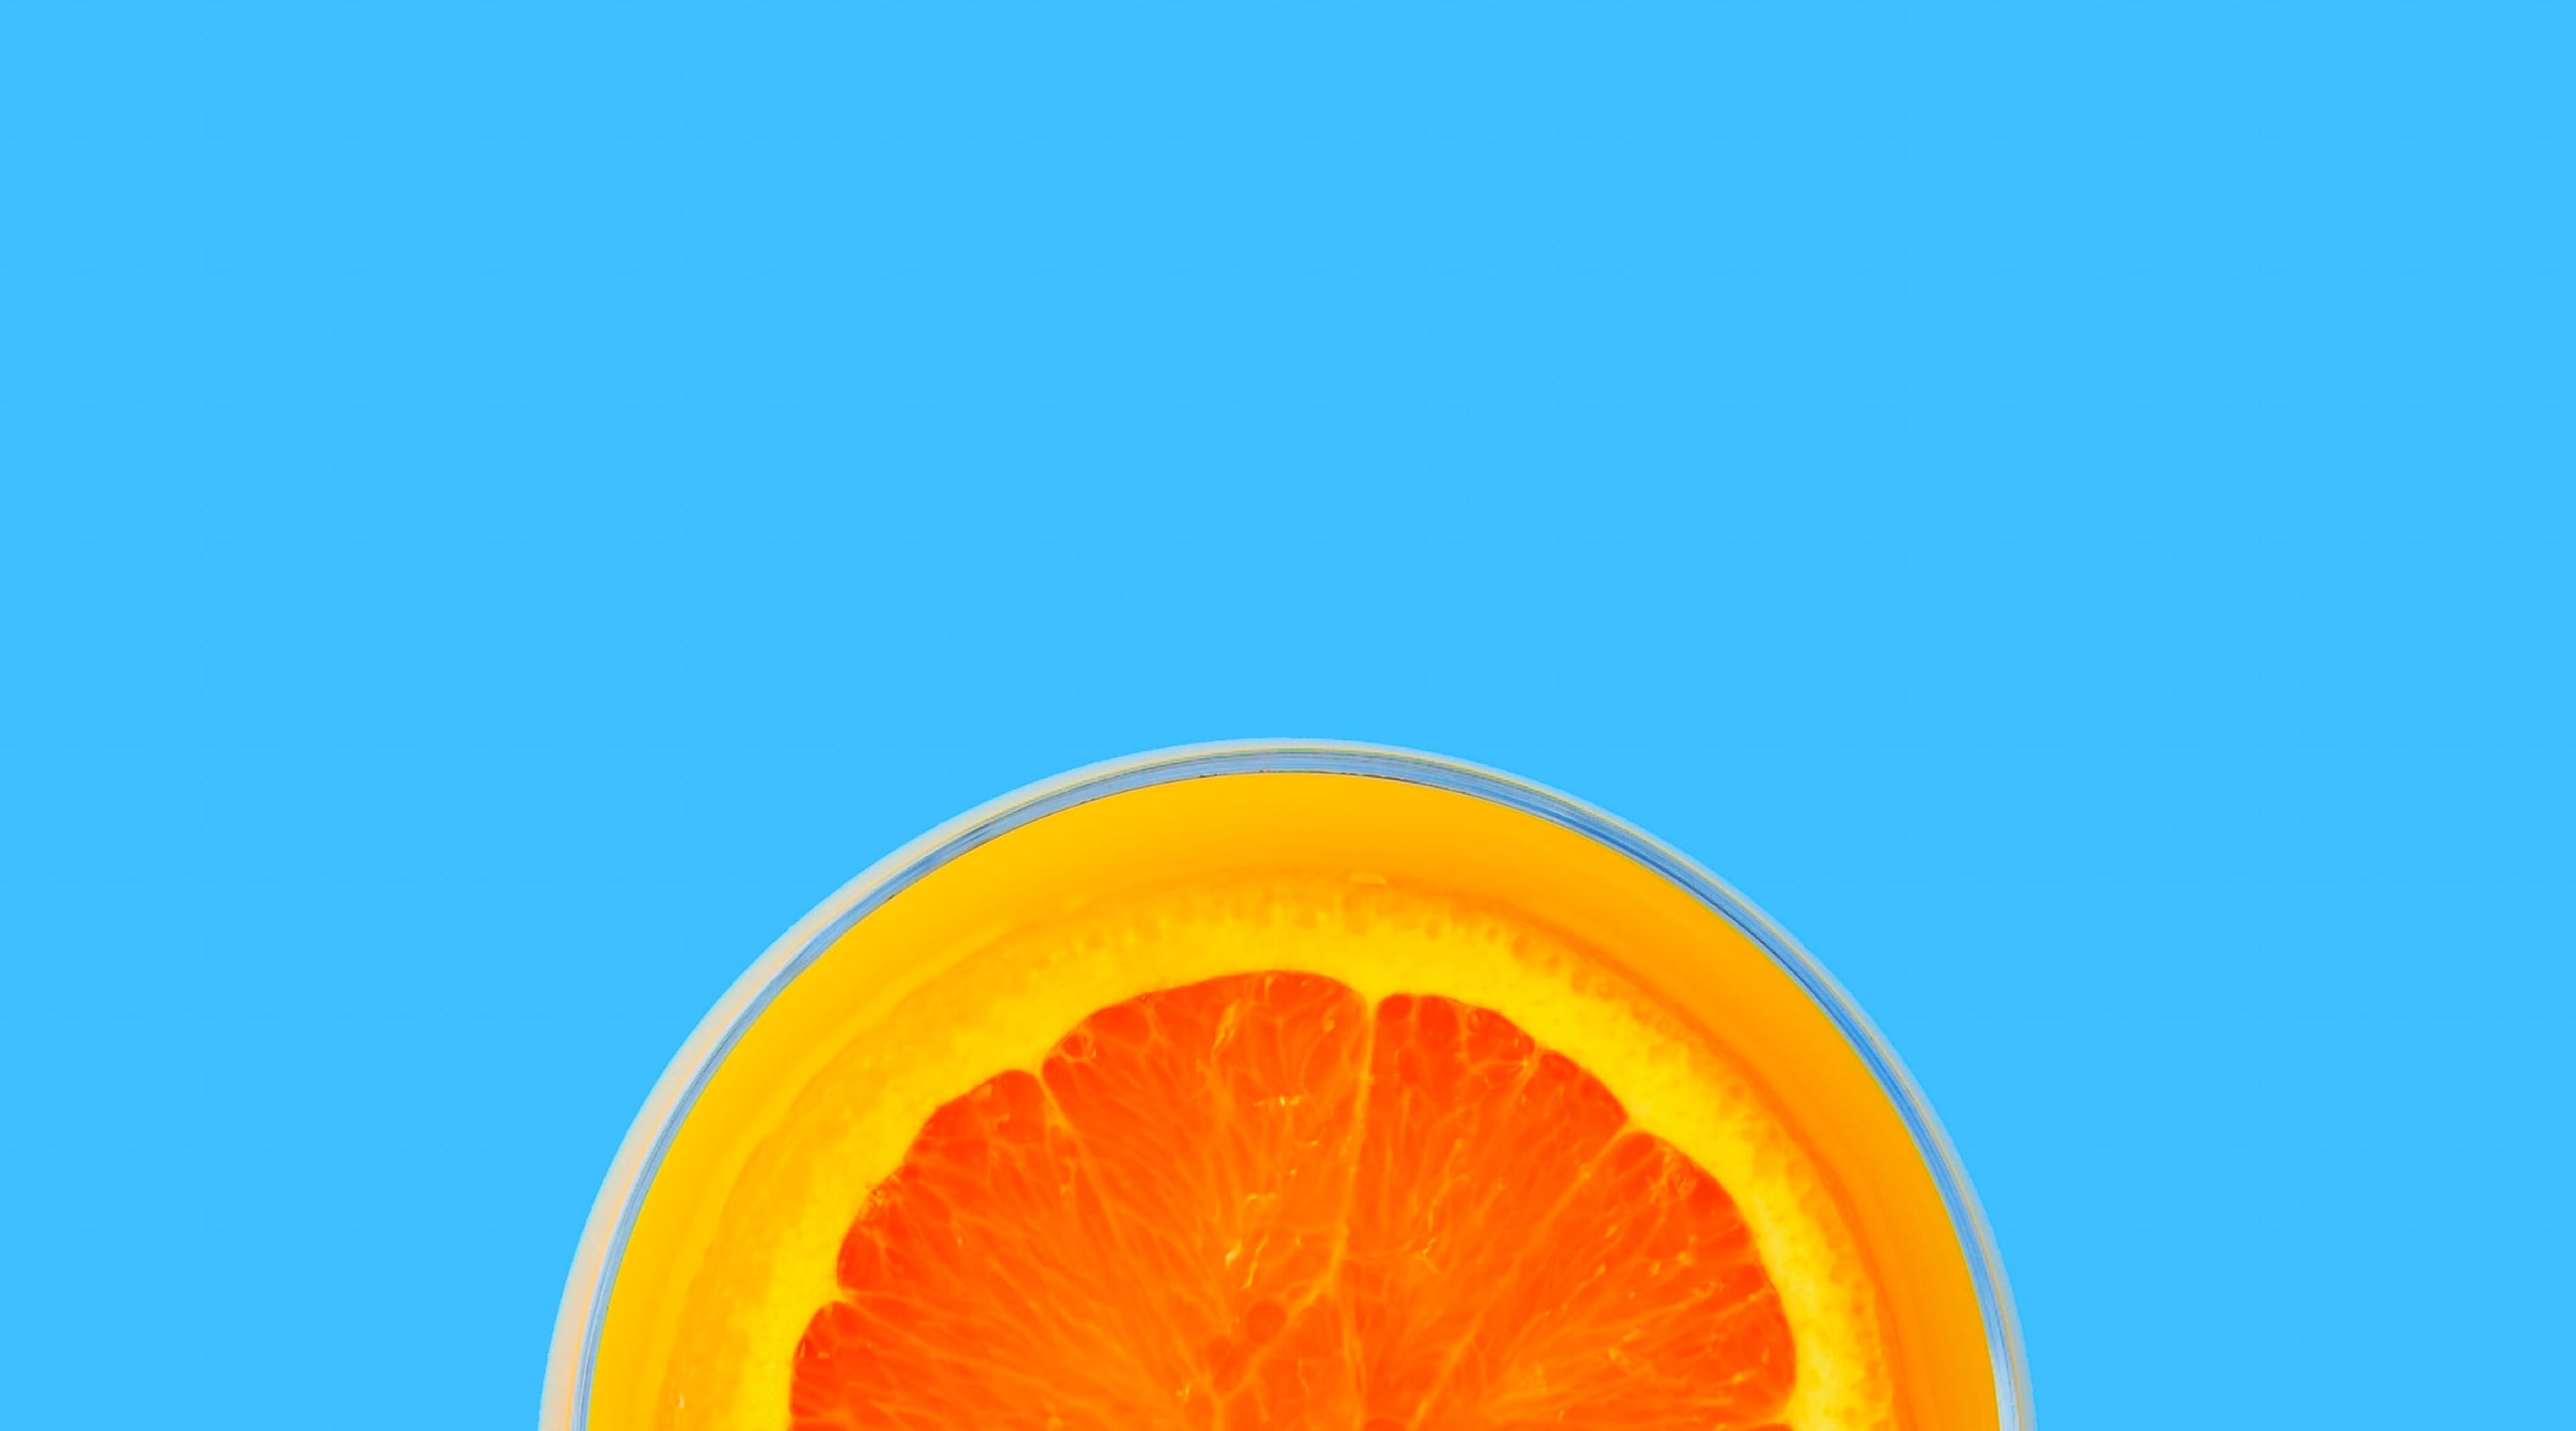 Image of orange sliced on the side